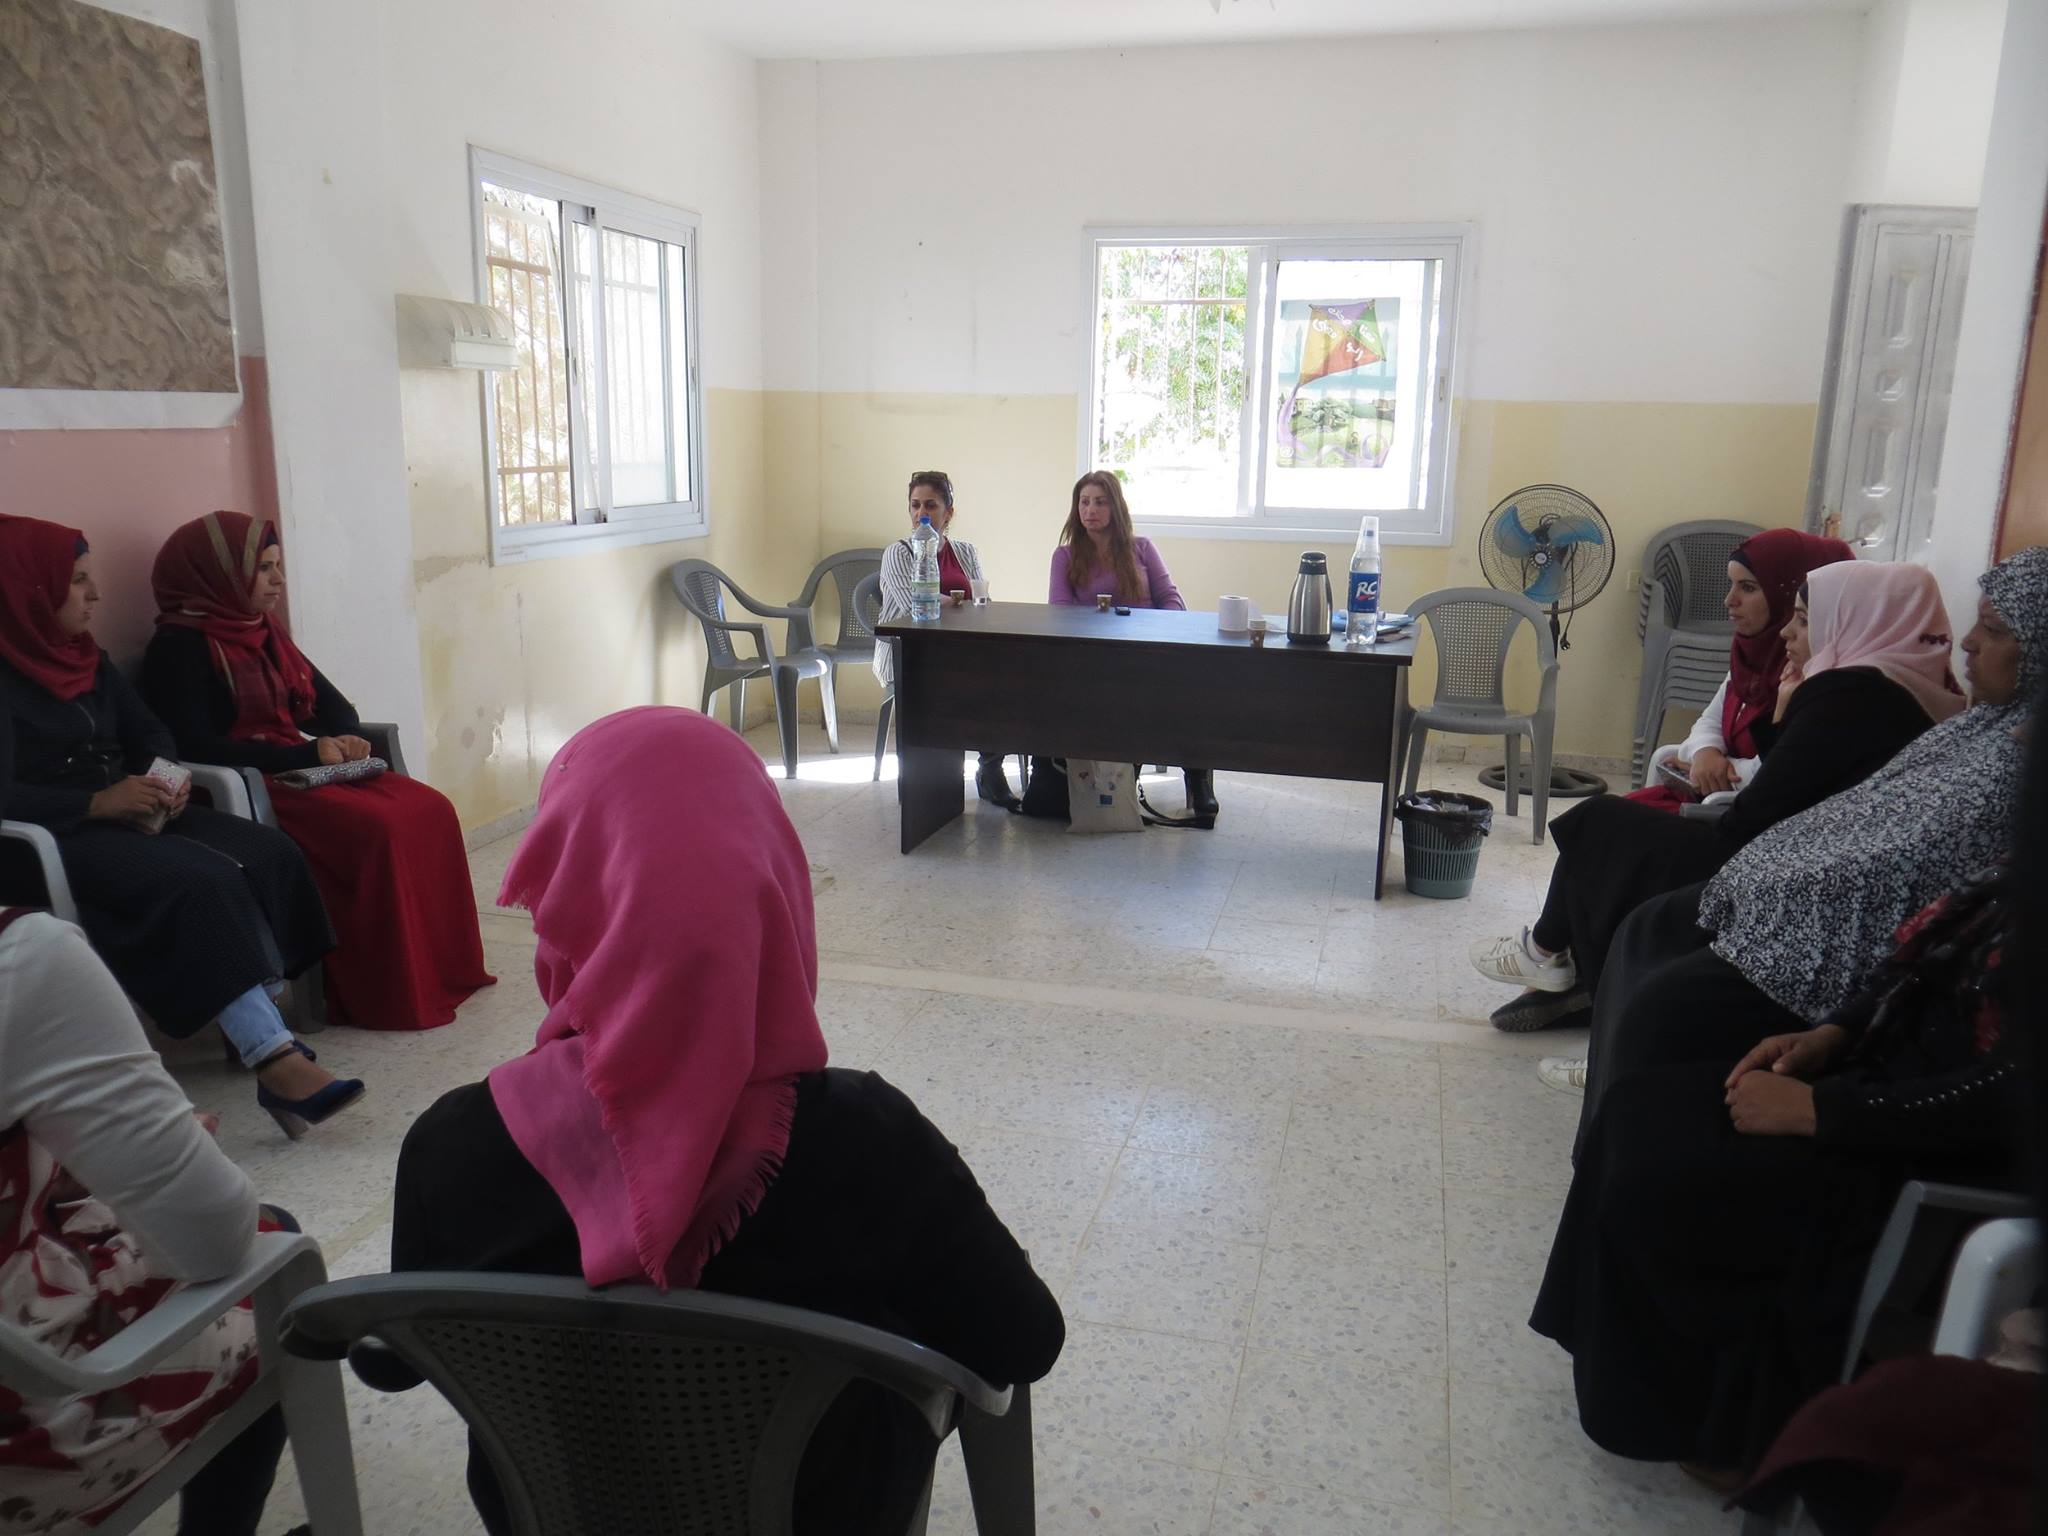  دعم النساء البدويات والريفيات لانشاء وادارة المشاريع المدرّة للدخل في جنوب الخليل وشرق القدس .